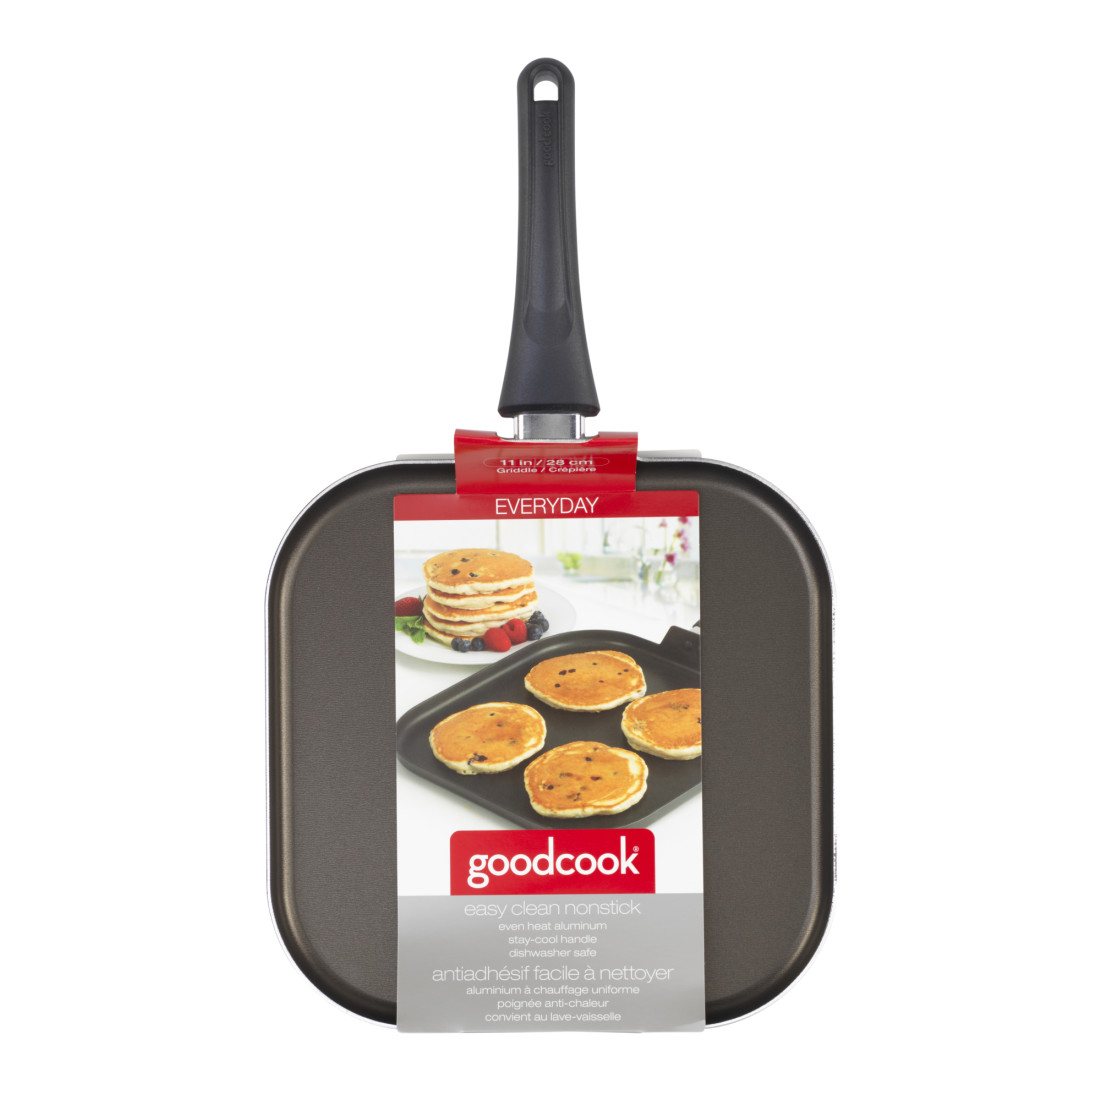 GoodCook 8 inch Small Sauté Pan